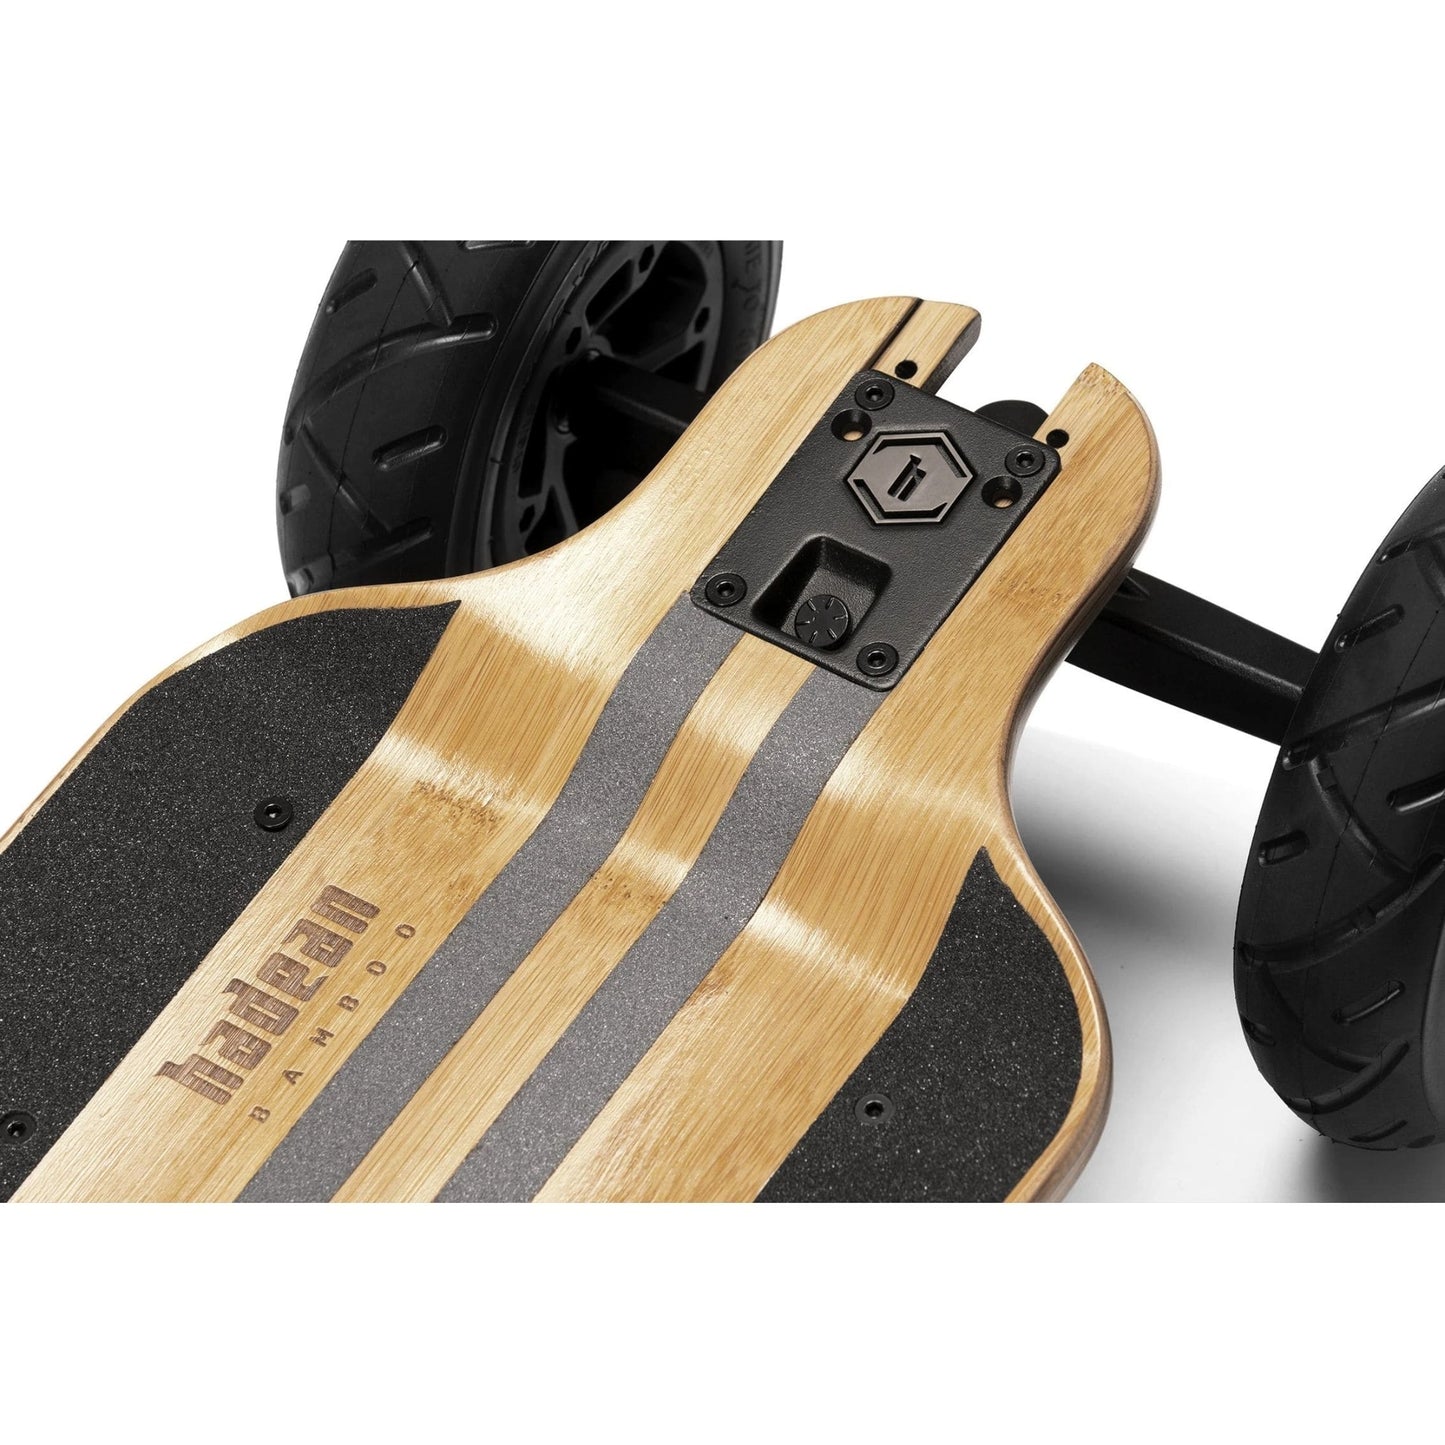 Evolve Hadean Bamboo 2 in 1 Electric Skateboard